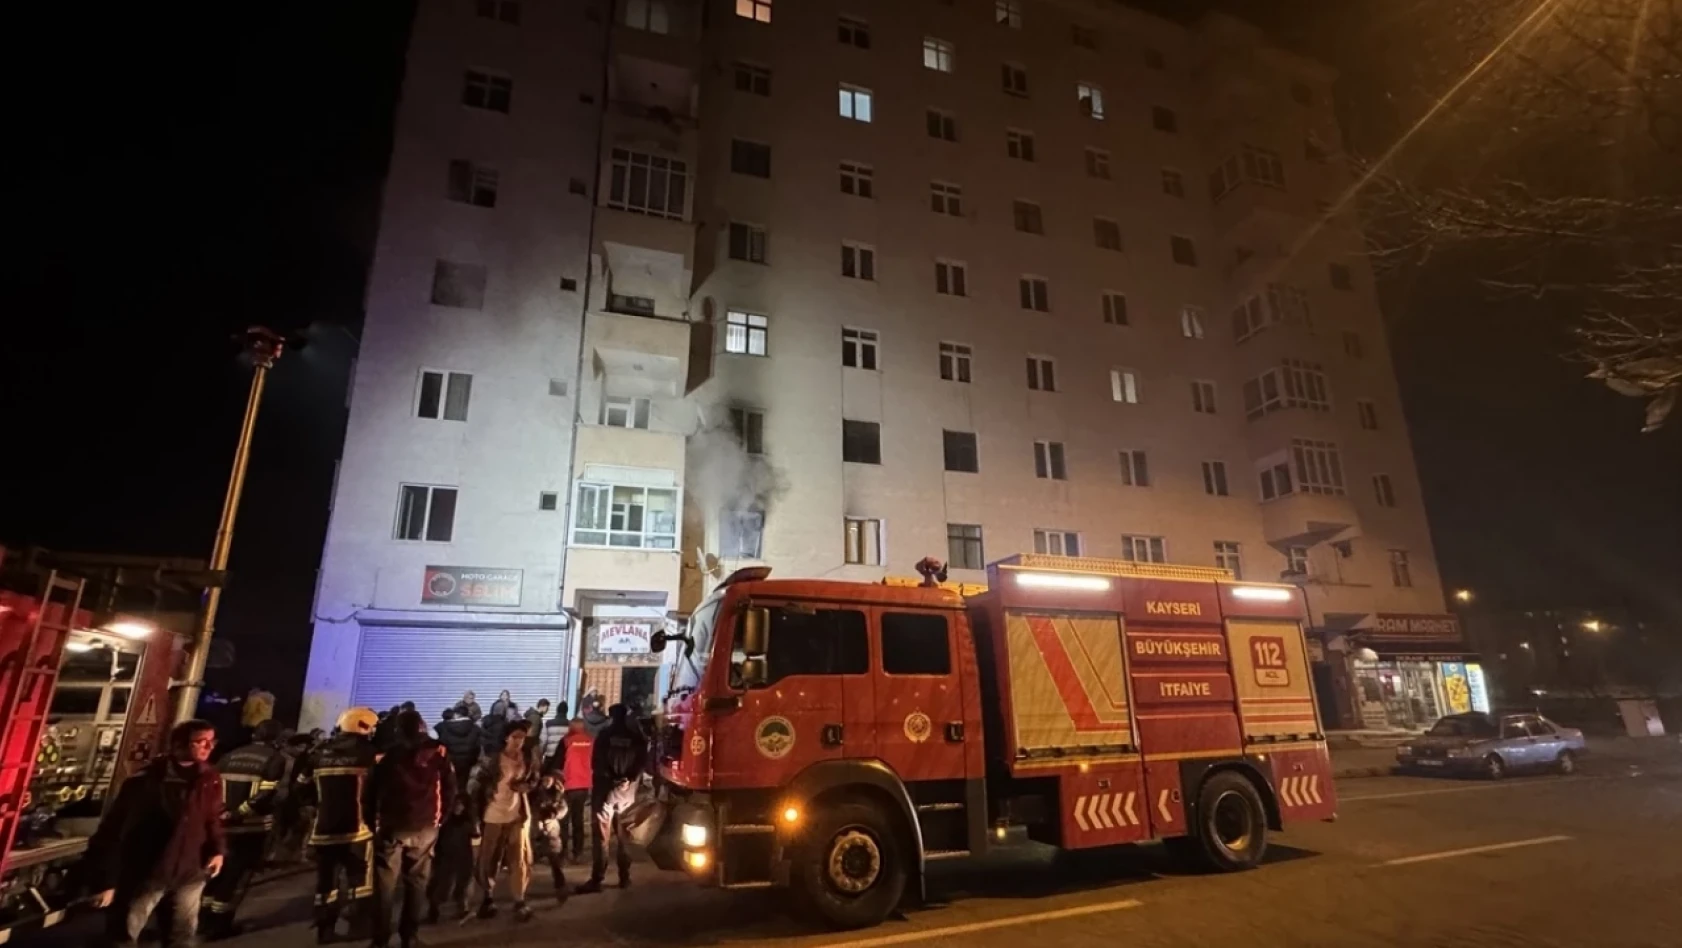 Kayseri'de yangın - Çok sayıda kişi hastaneye kaldırıldı!